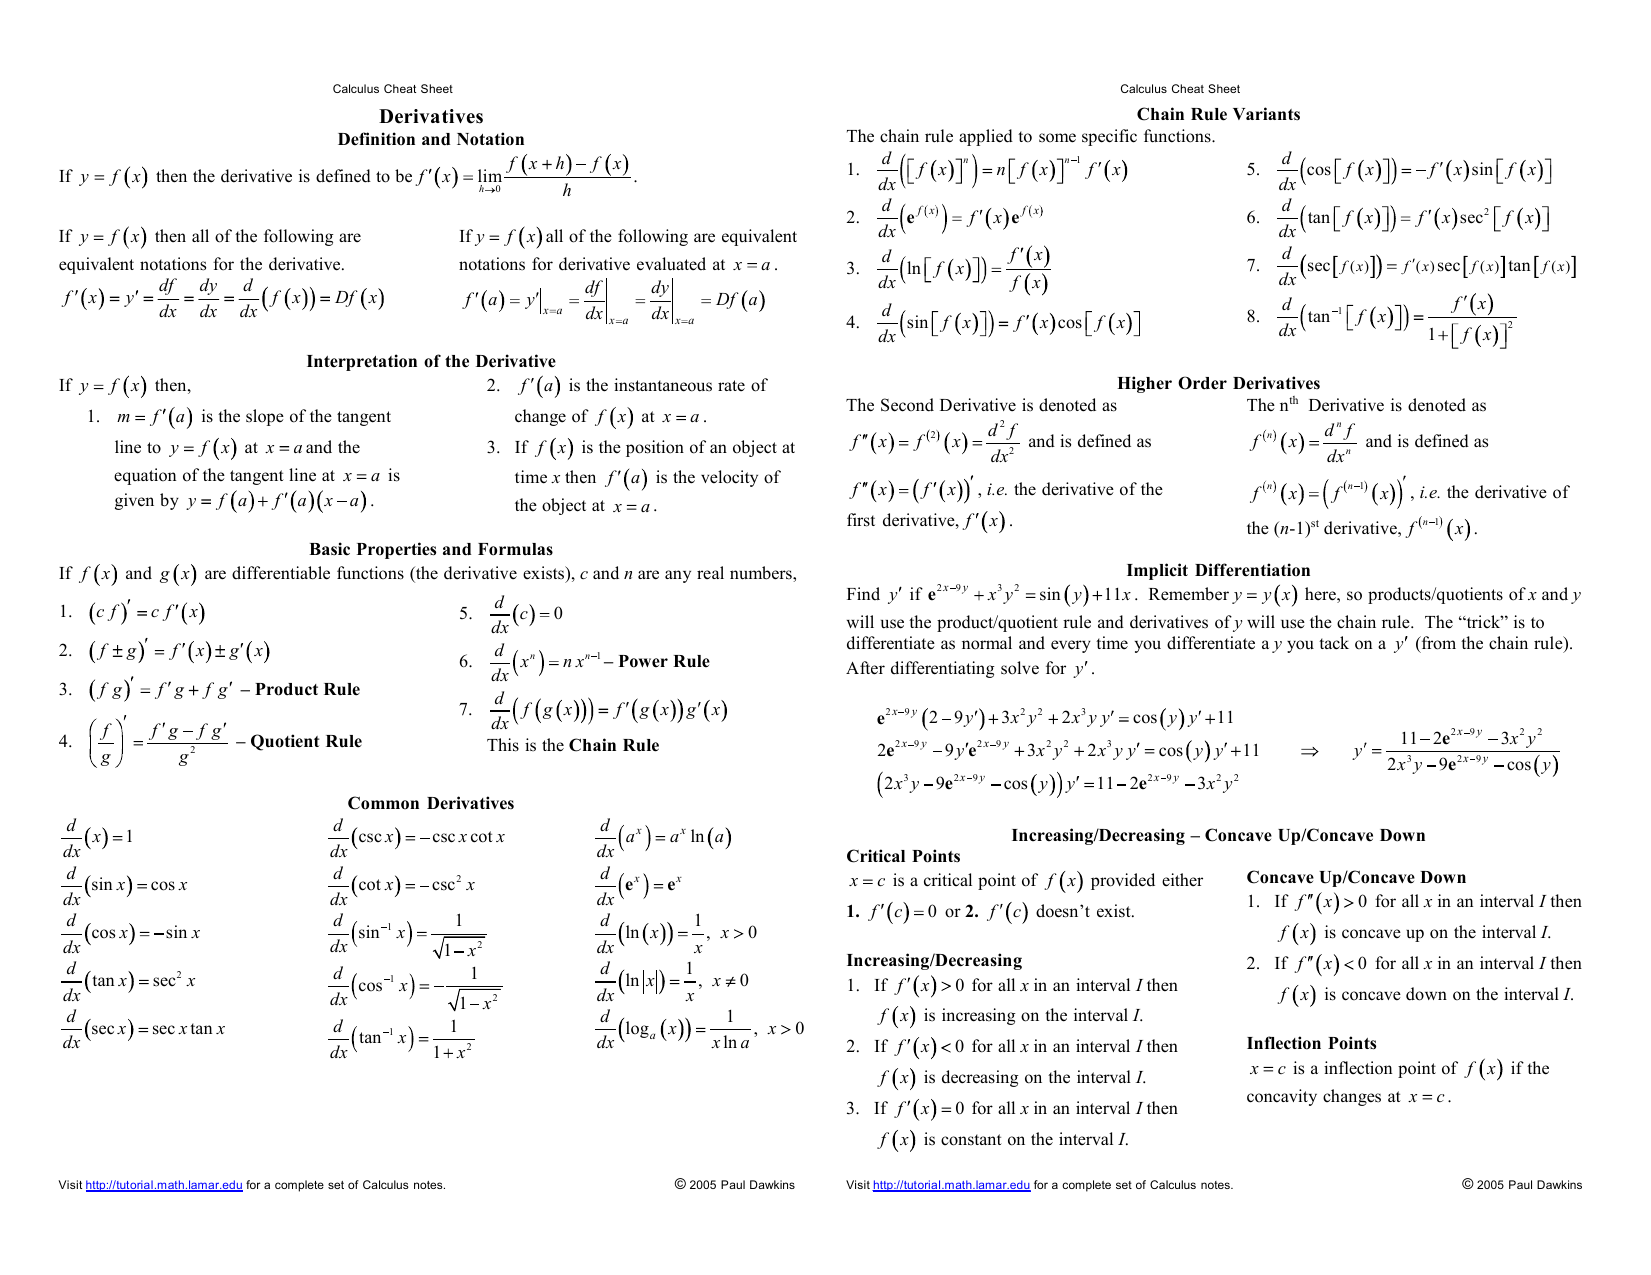 calculus-2-final-exam-cheat-sheet